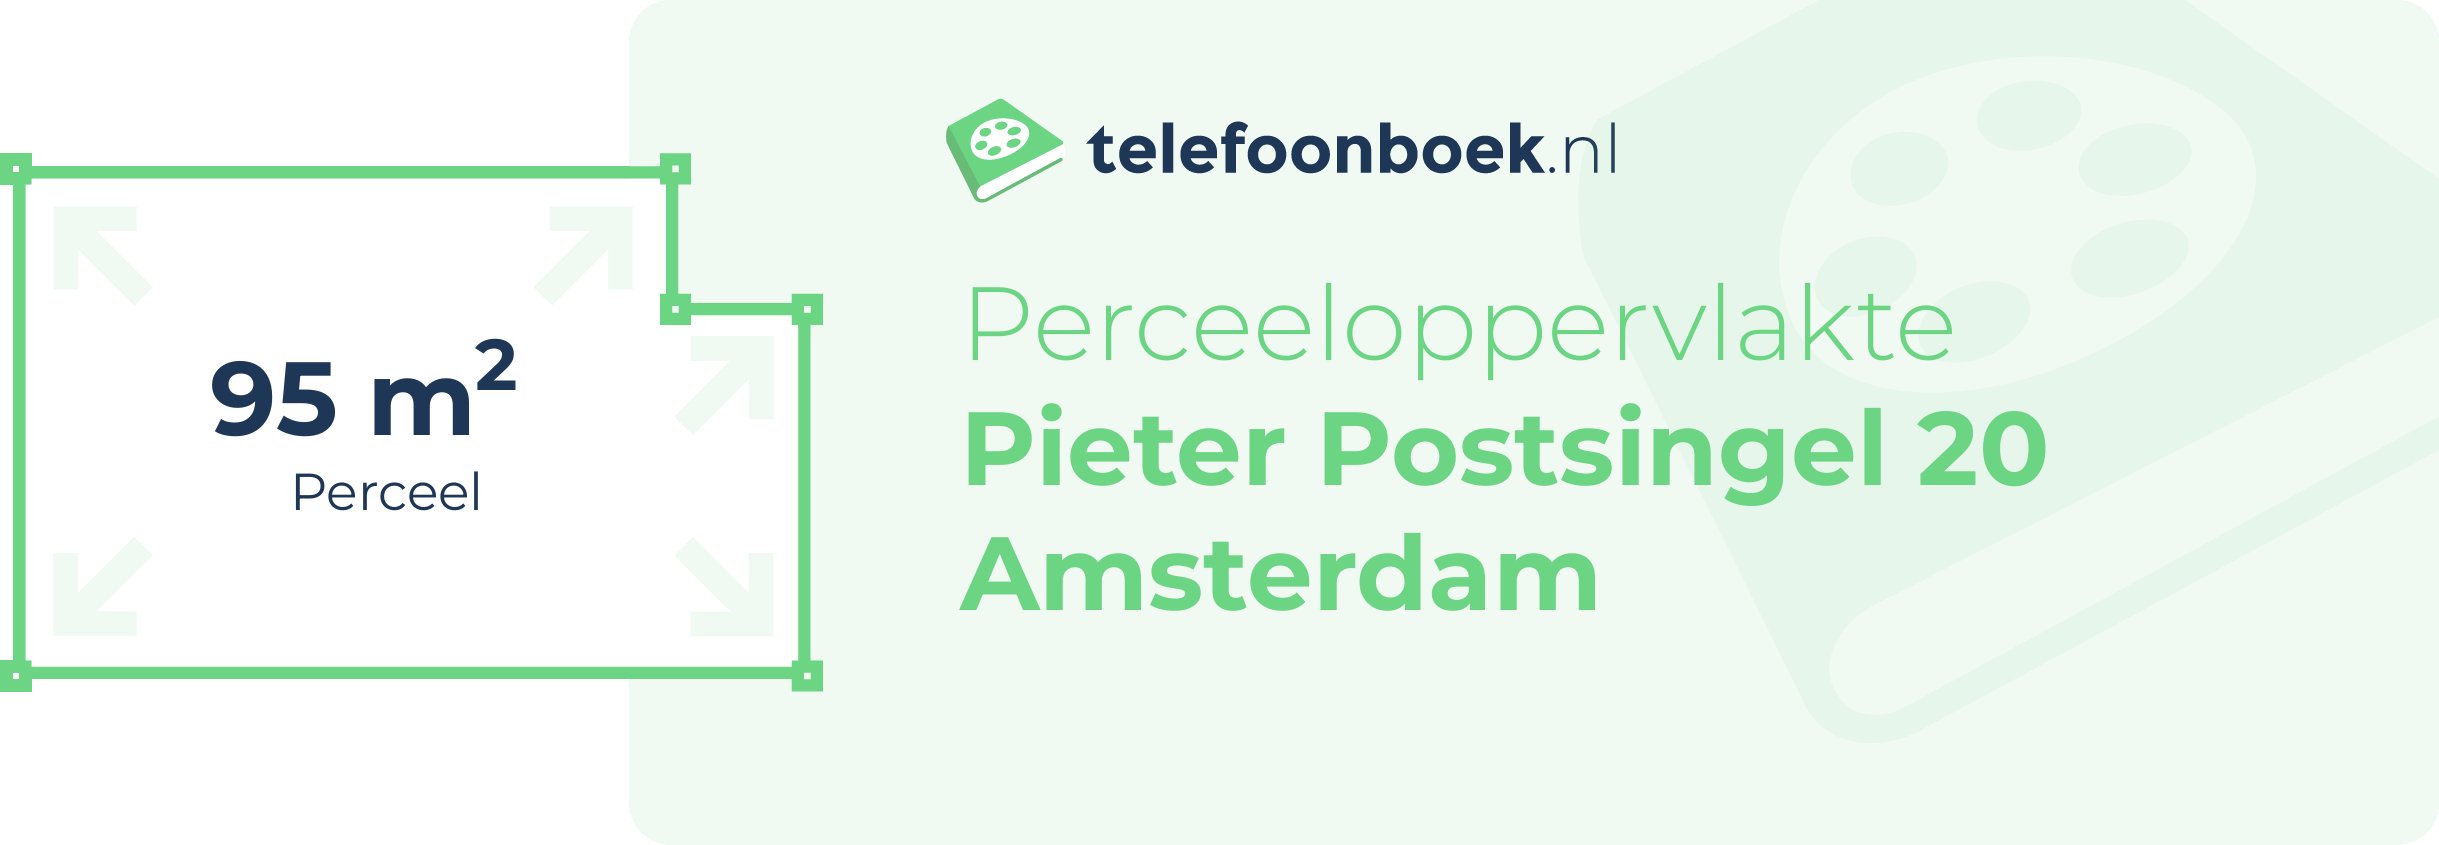 Perceeloppervlakte Pieter Postsingel 20 Amsterdam